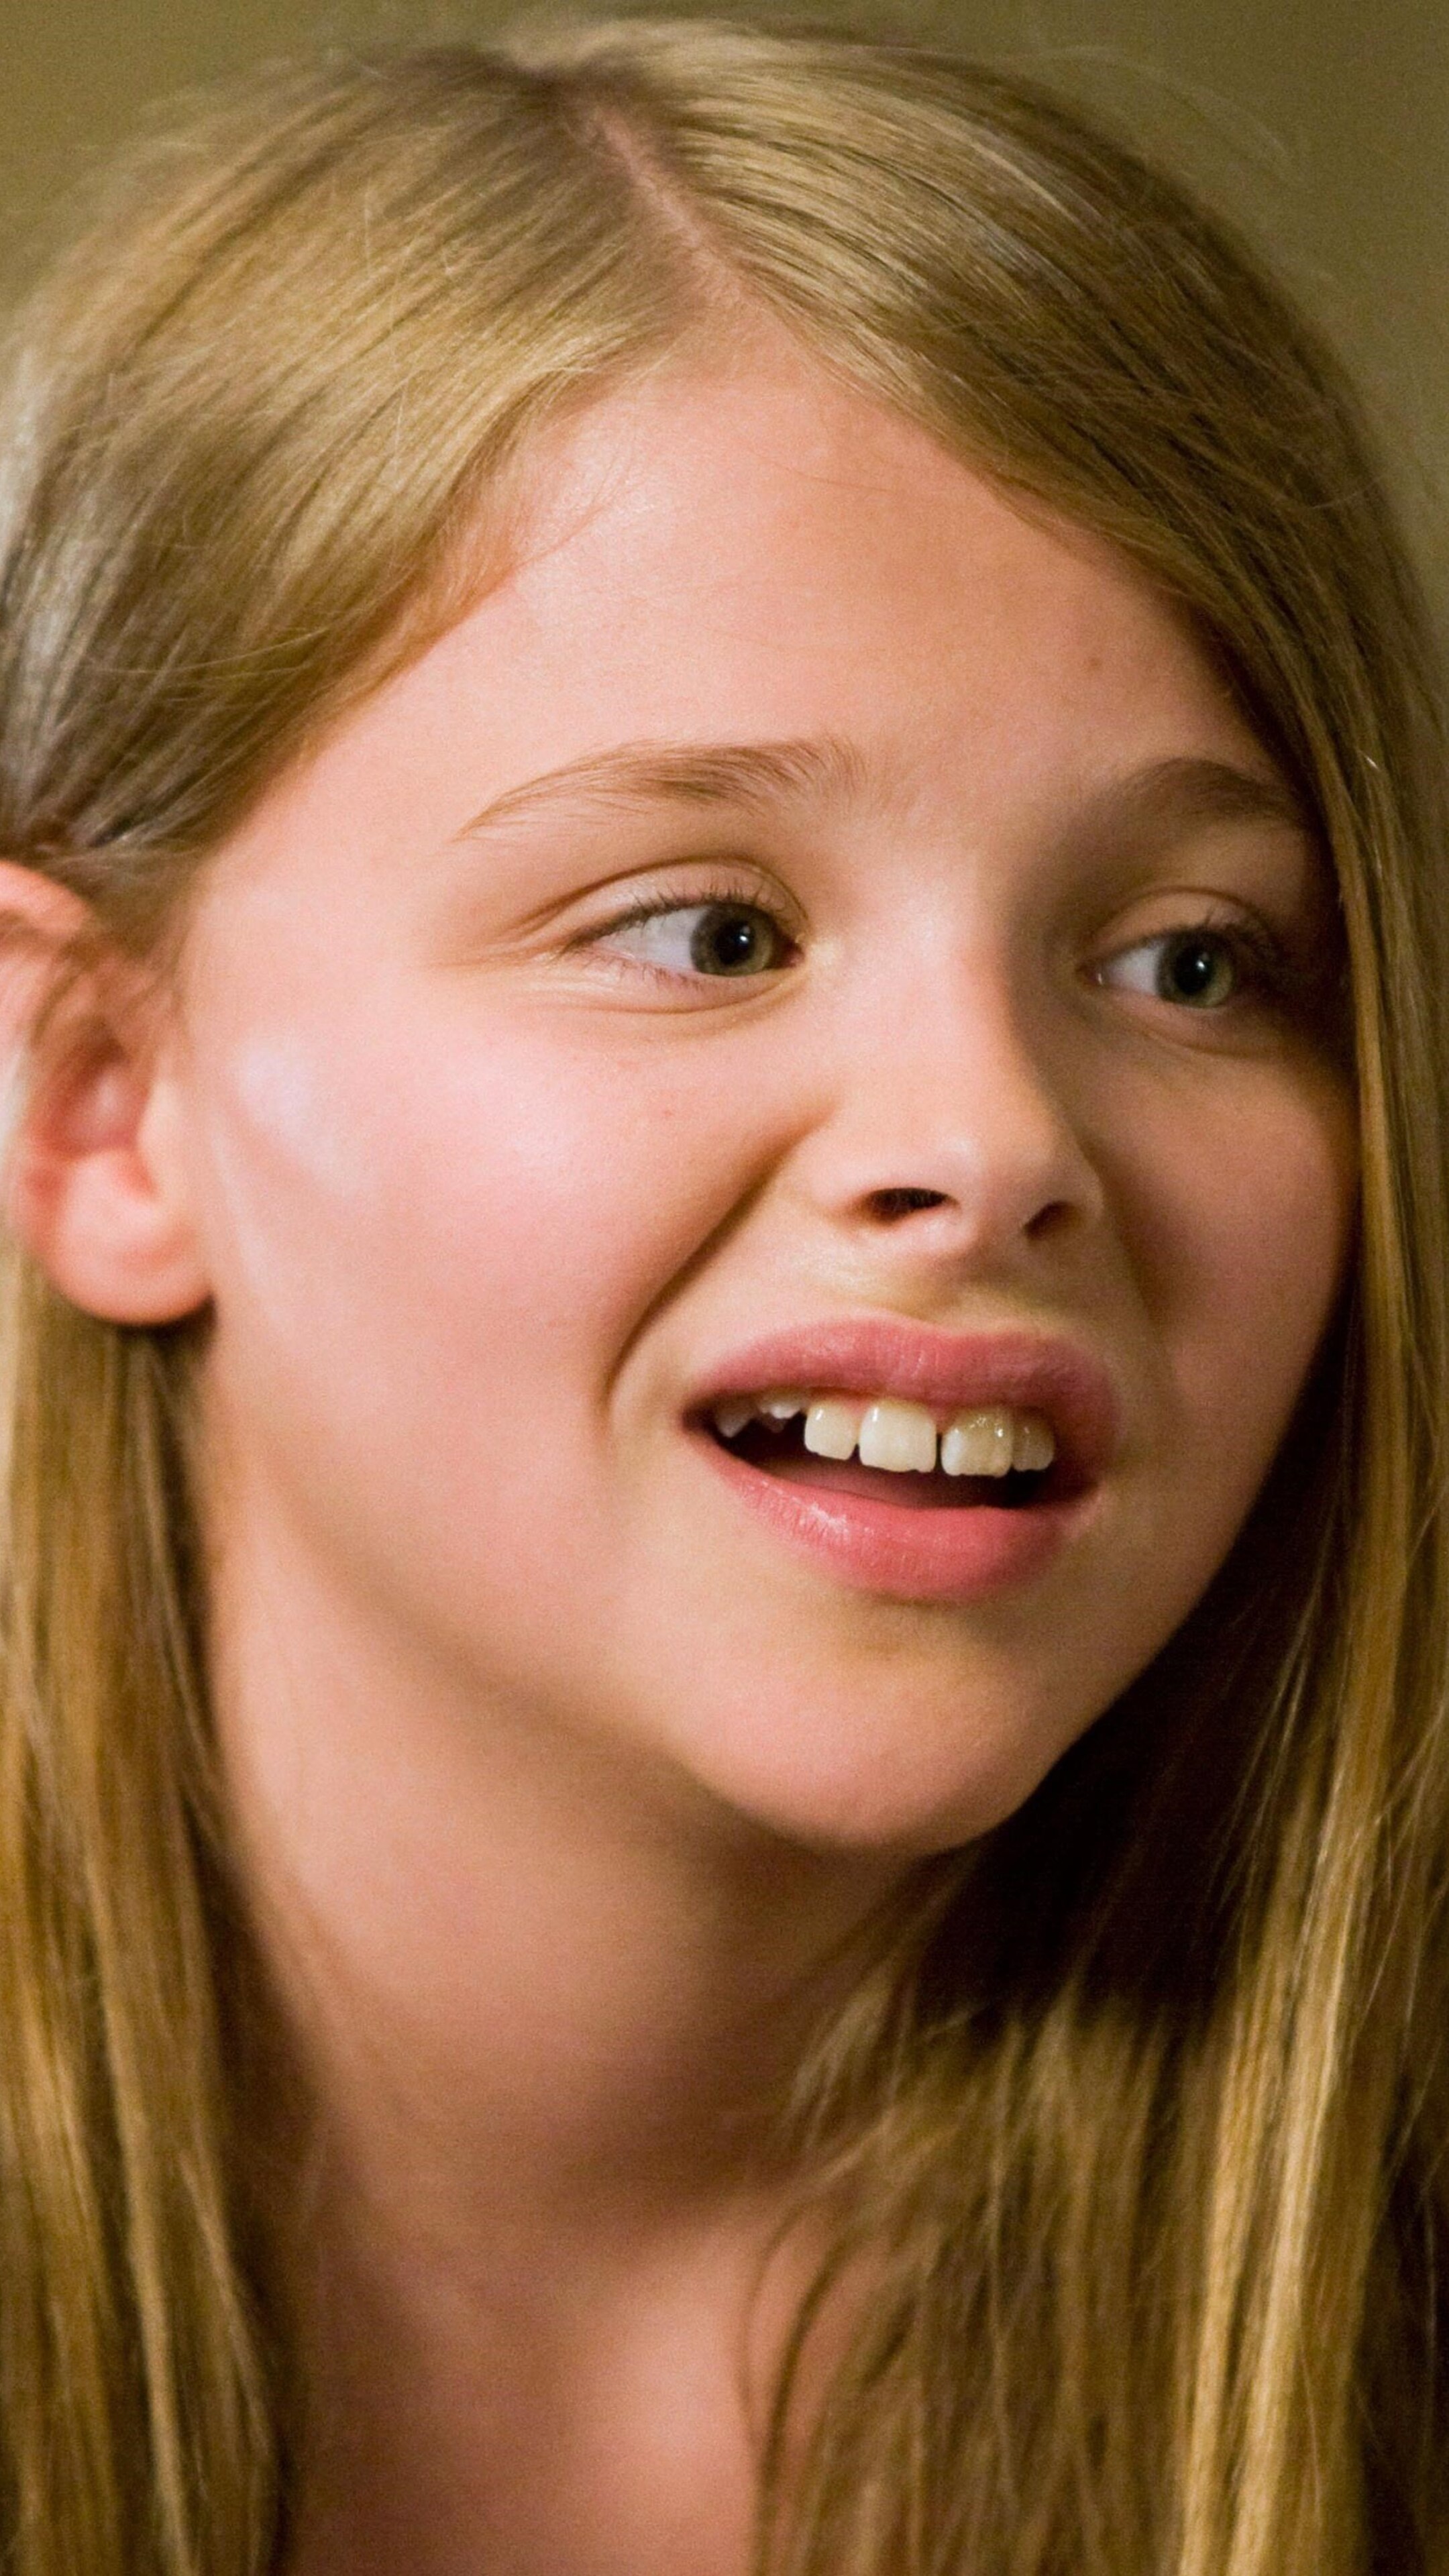 (500) Days of Summer: Chloe Grace Moretz as Rachel Hansen, Tom's younger half-sister. 2160x3840 4K Background.